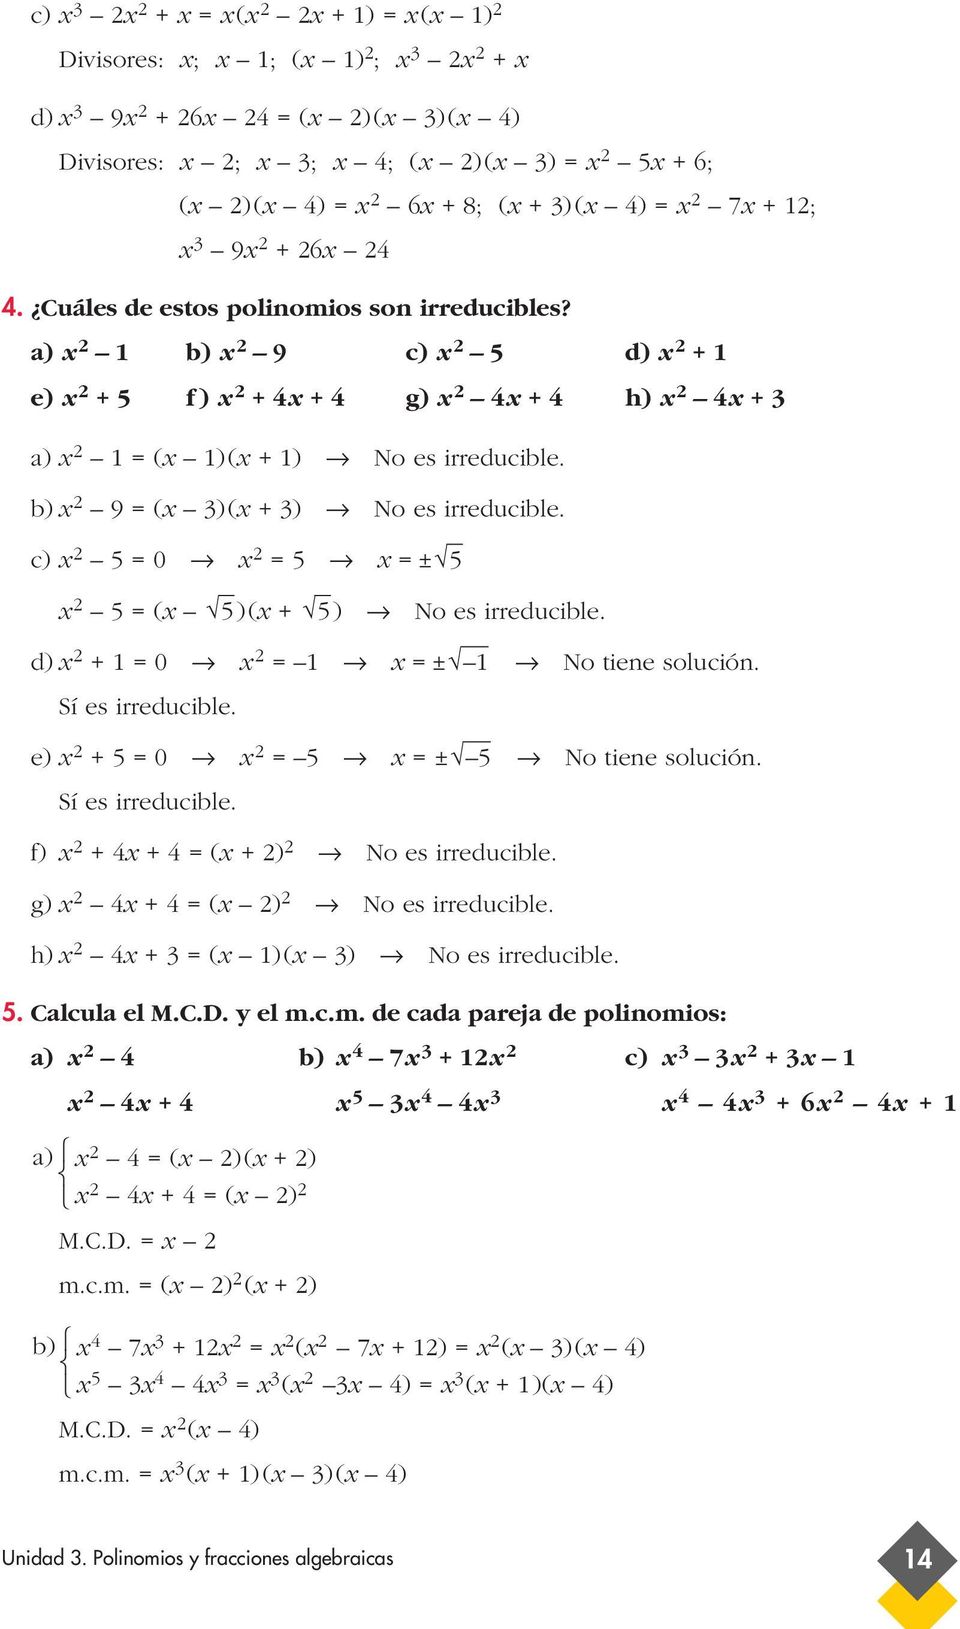 Sí es irreducible. e) + 5 0 5 ± 5 No tiene solución. Sí es irreducible. f) + 4 + 4 ( + ) No es irreducible. g) 4 + 4 ( ) No es irreducible. h) 4 + ( )( ) No es irreducible. 5. Calcula el M.C.D.